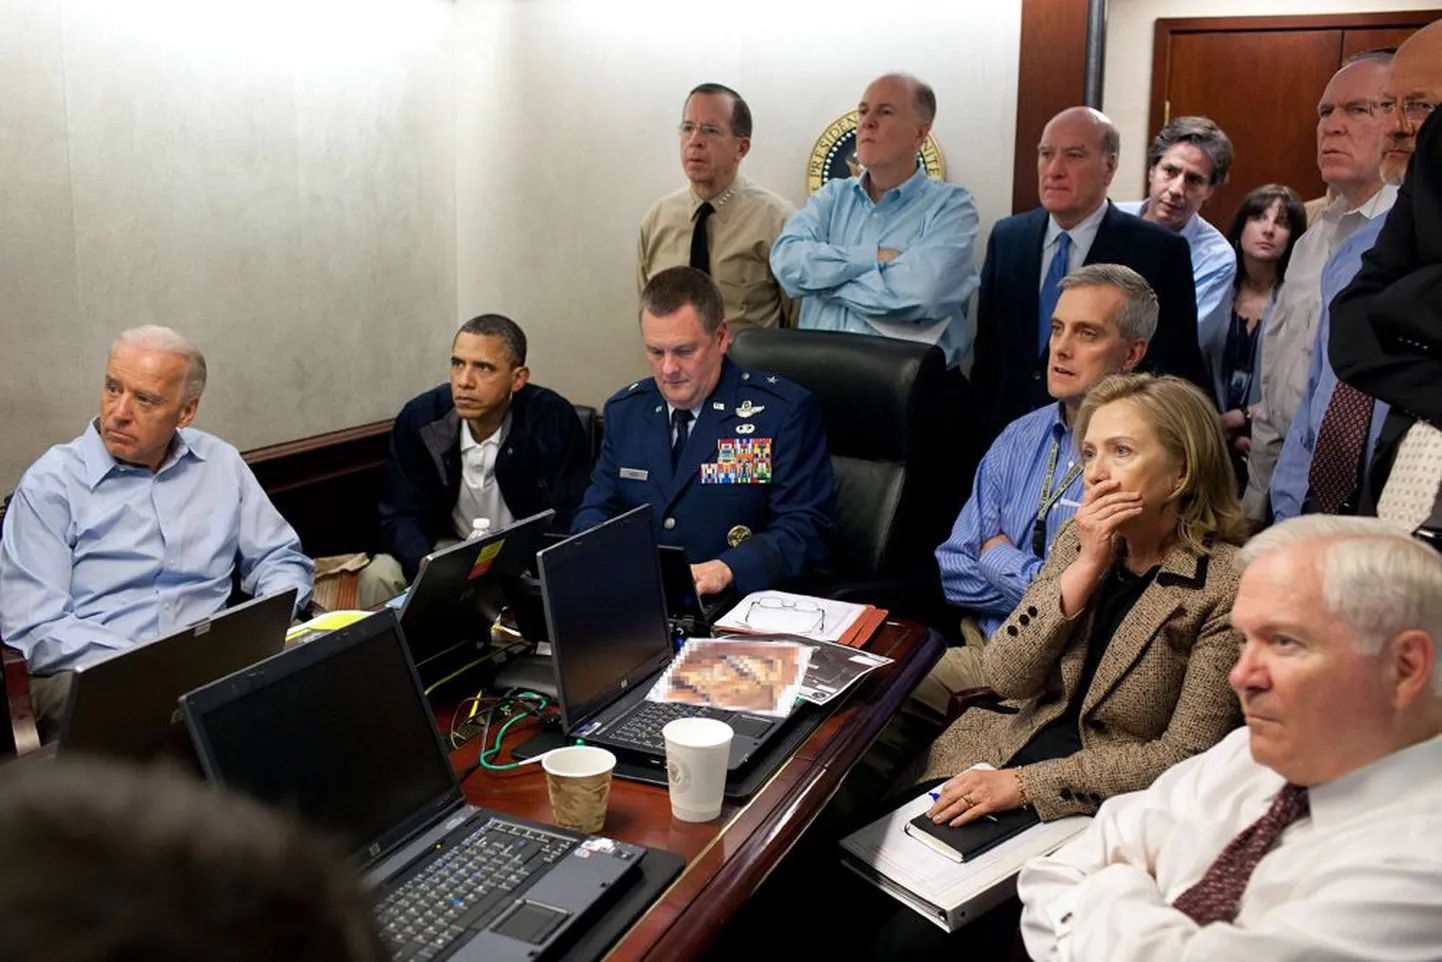 USA juhtkond jälgis Valgest Majast satelliidi vahendusel reaalajas Osama bin Ladeni tapmisega kulmineerunud haarangut. Fotol on president Barack Obamaga (vasakult teine) koos asepresident Joe Biden (vasakul), kaitseminister Robert Gates (paremal) ja välisminister Hillary Clinton (paremalt teine) ning kõrgeimad sõjaväelased ja julgeolekunõunikud.